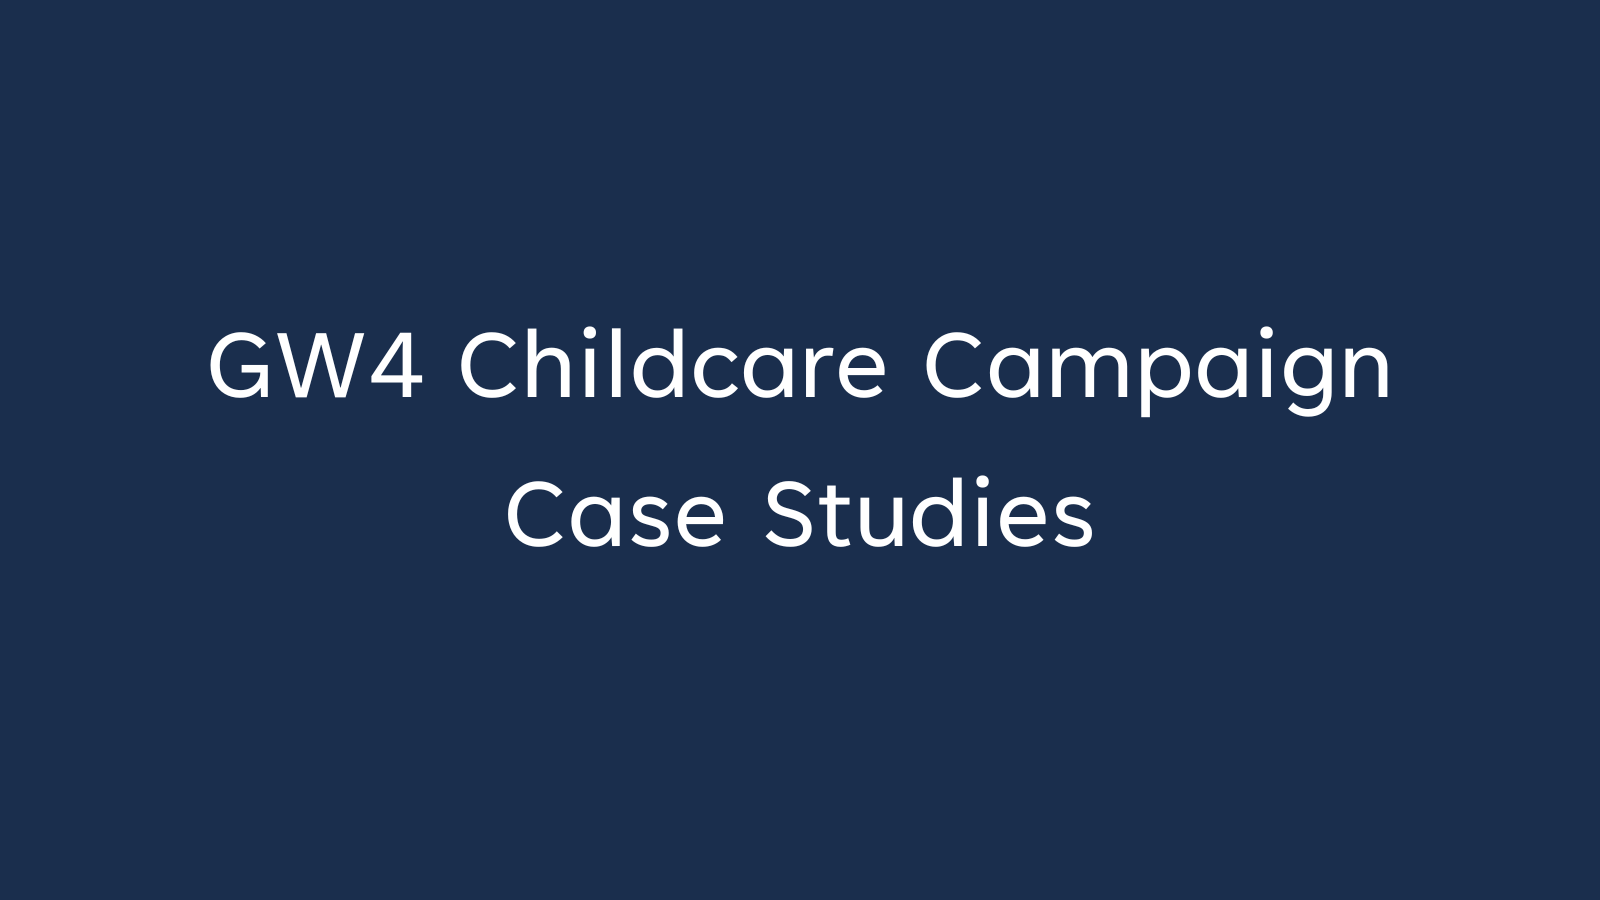 Image says: GW4 Childcare Campaign Case Studies